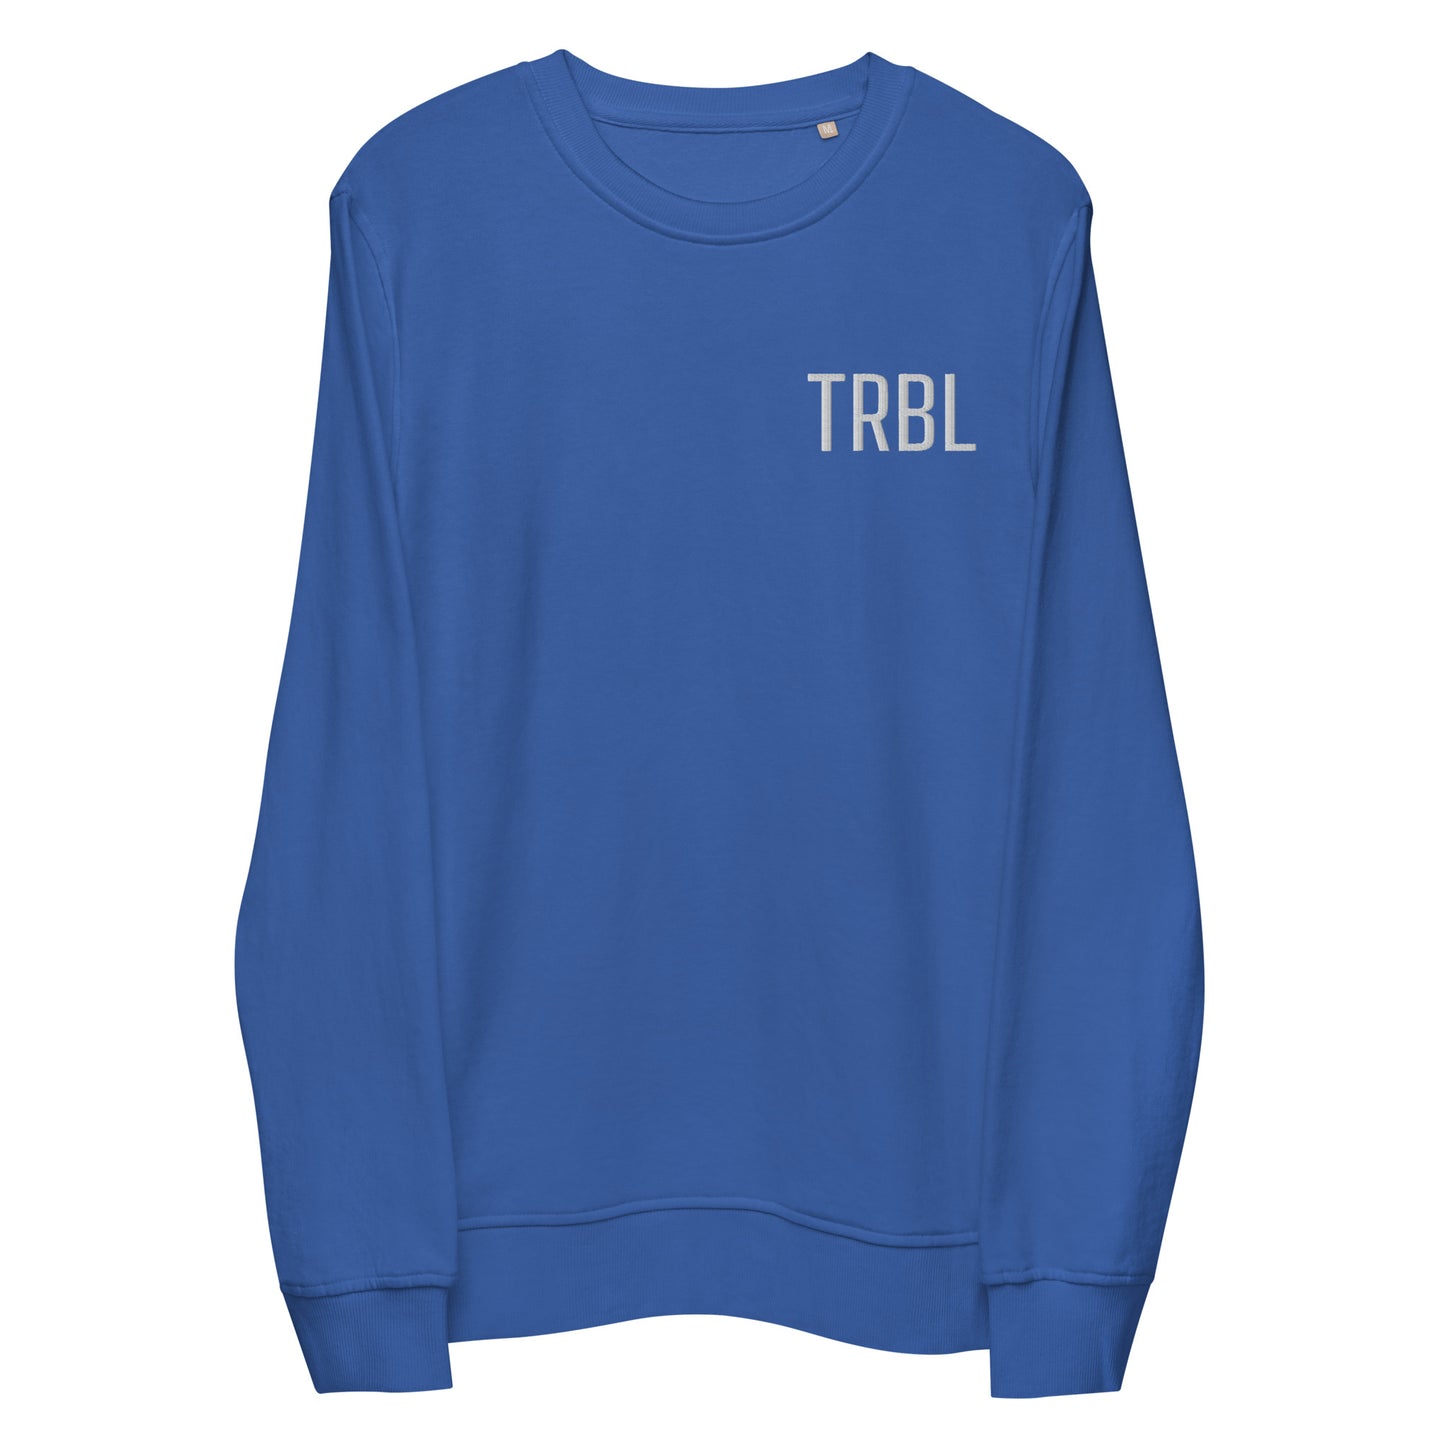 TRBL - Unisex Organic Sweatshirt